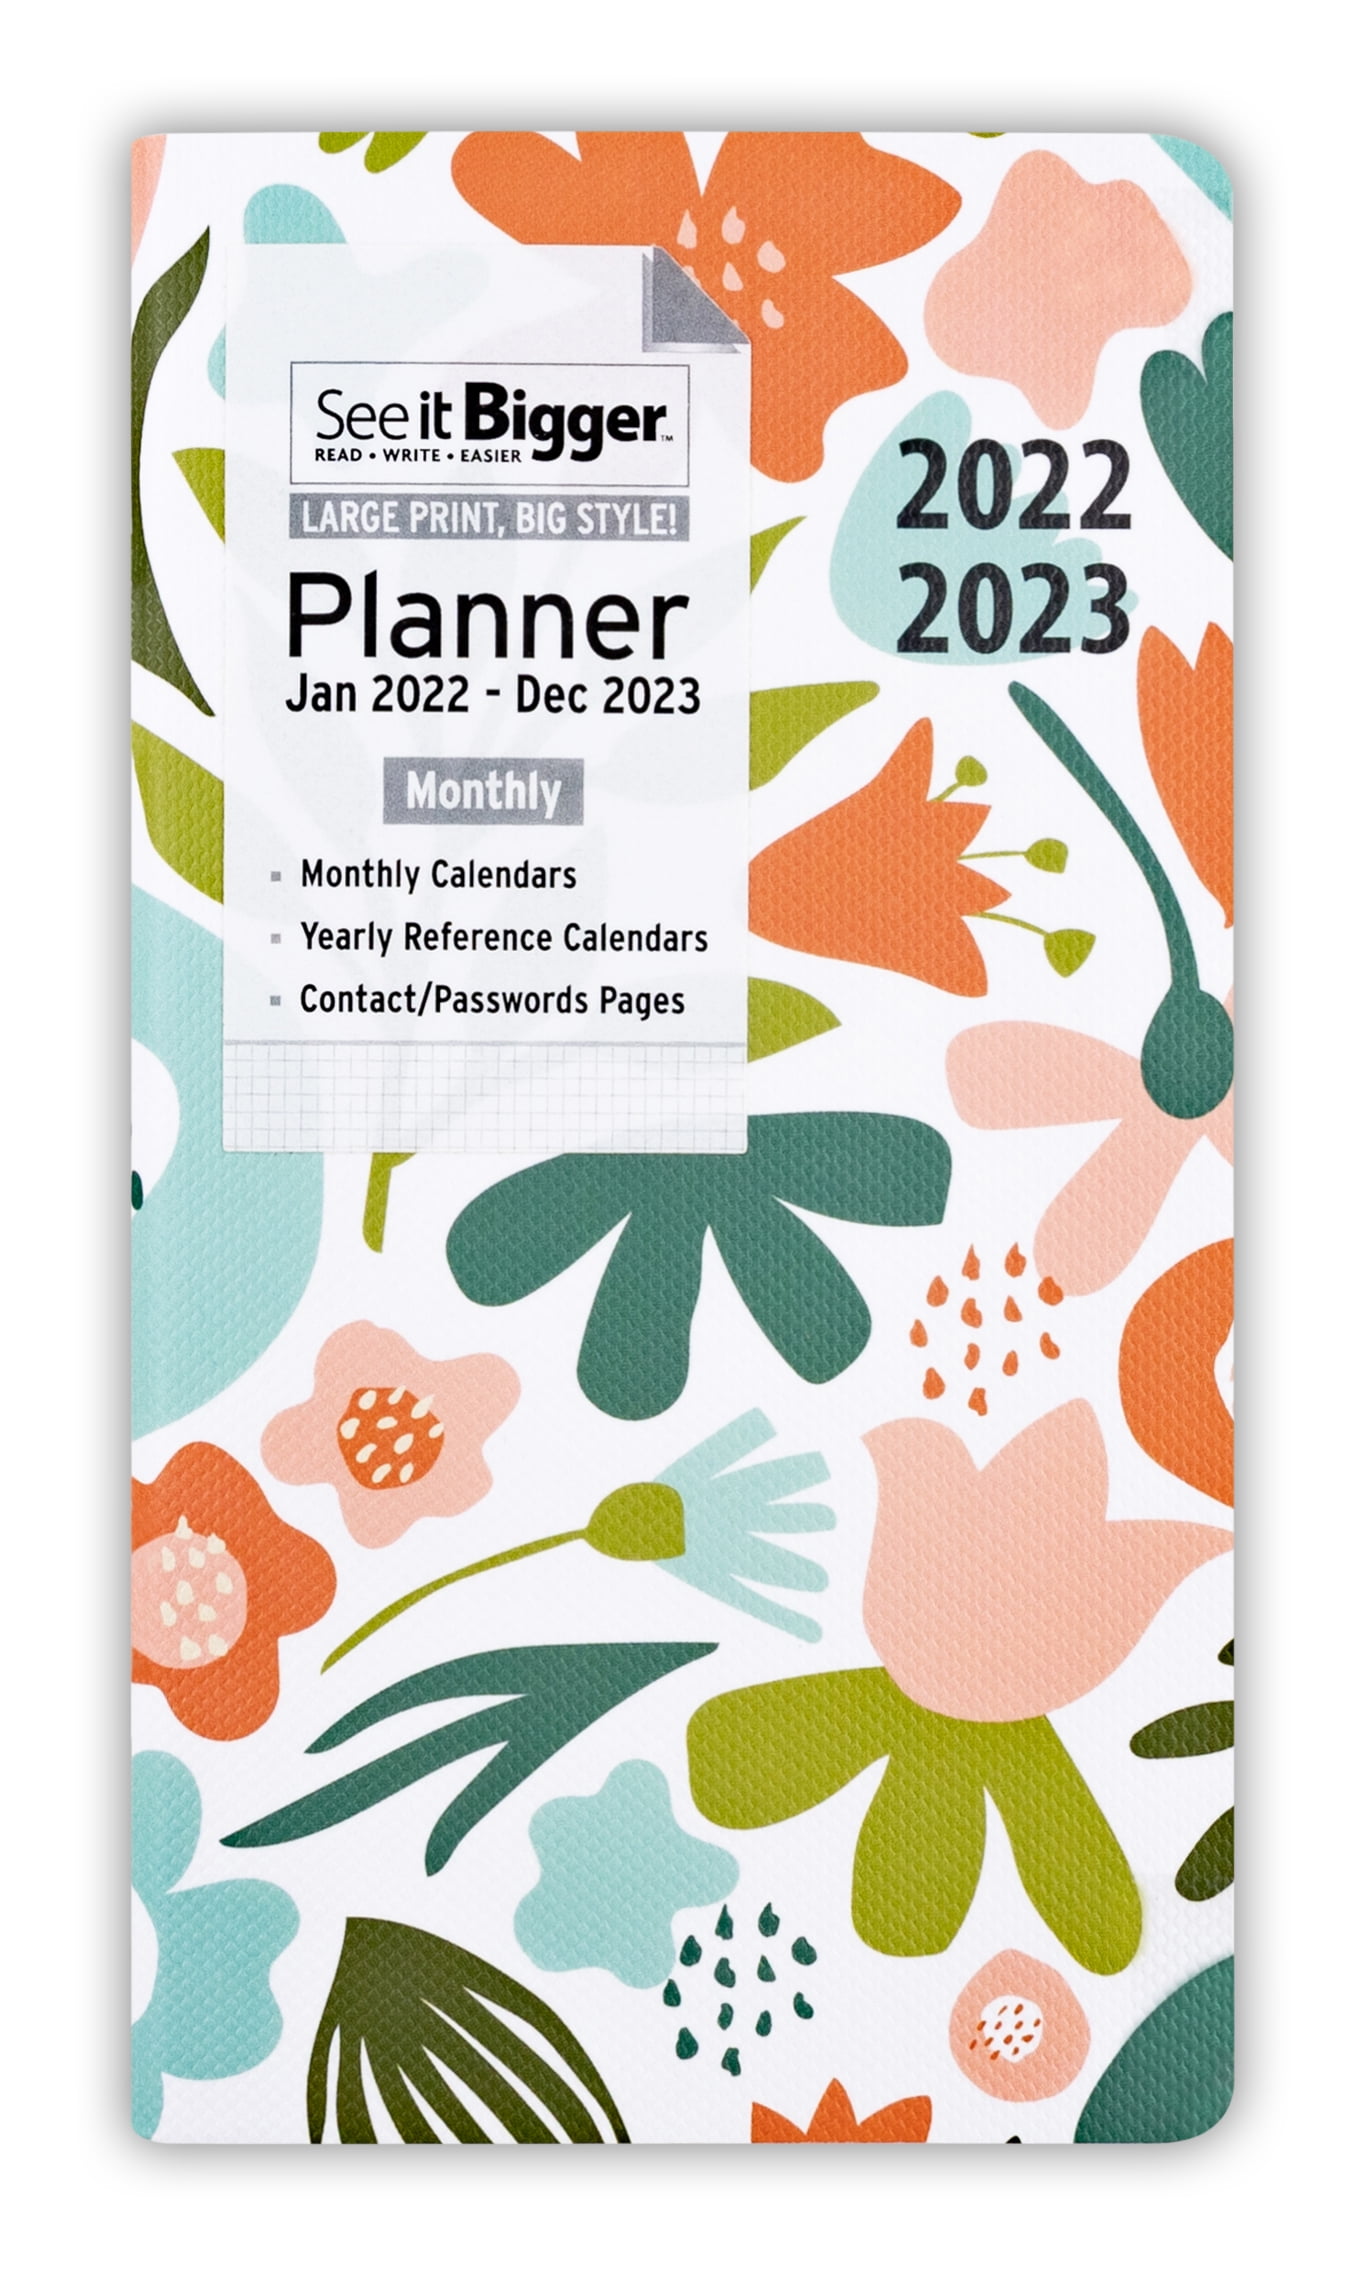 Pocket Size 4x6.5 inch Agenda Schedule Organizer Appointment Months Yearly Calendar Holidays Address Book password log Jan 2021 Three year planner Dec 2023